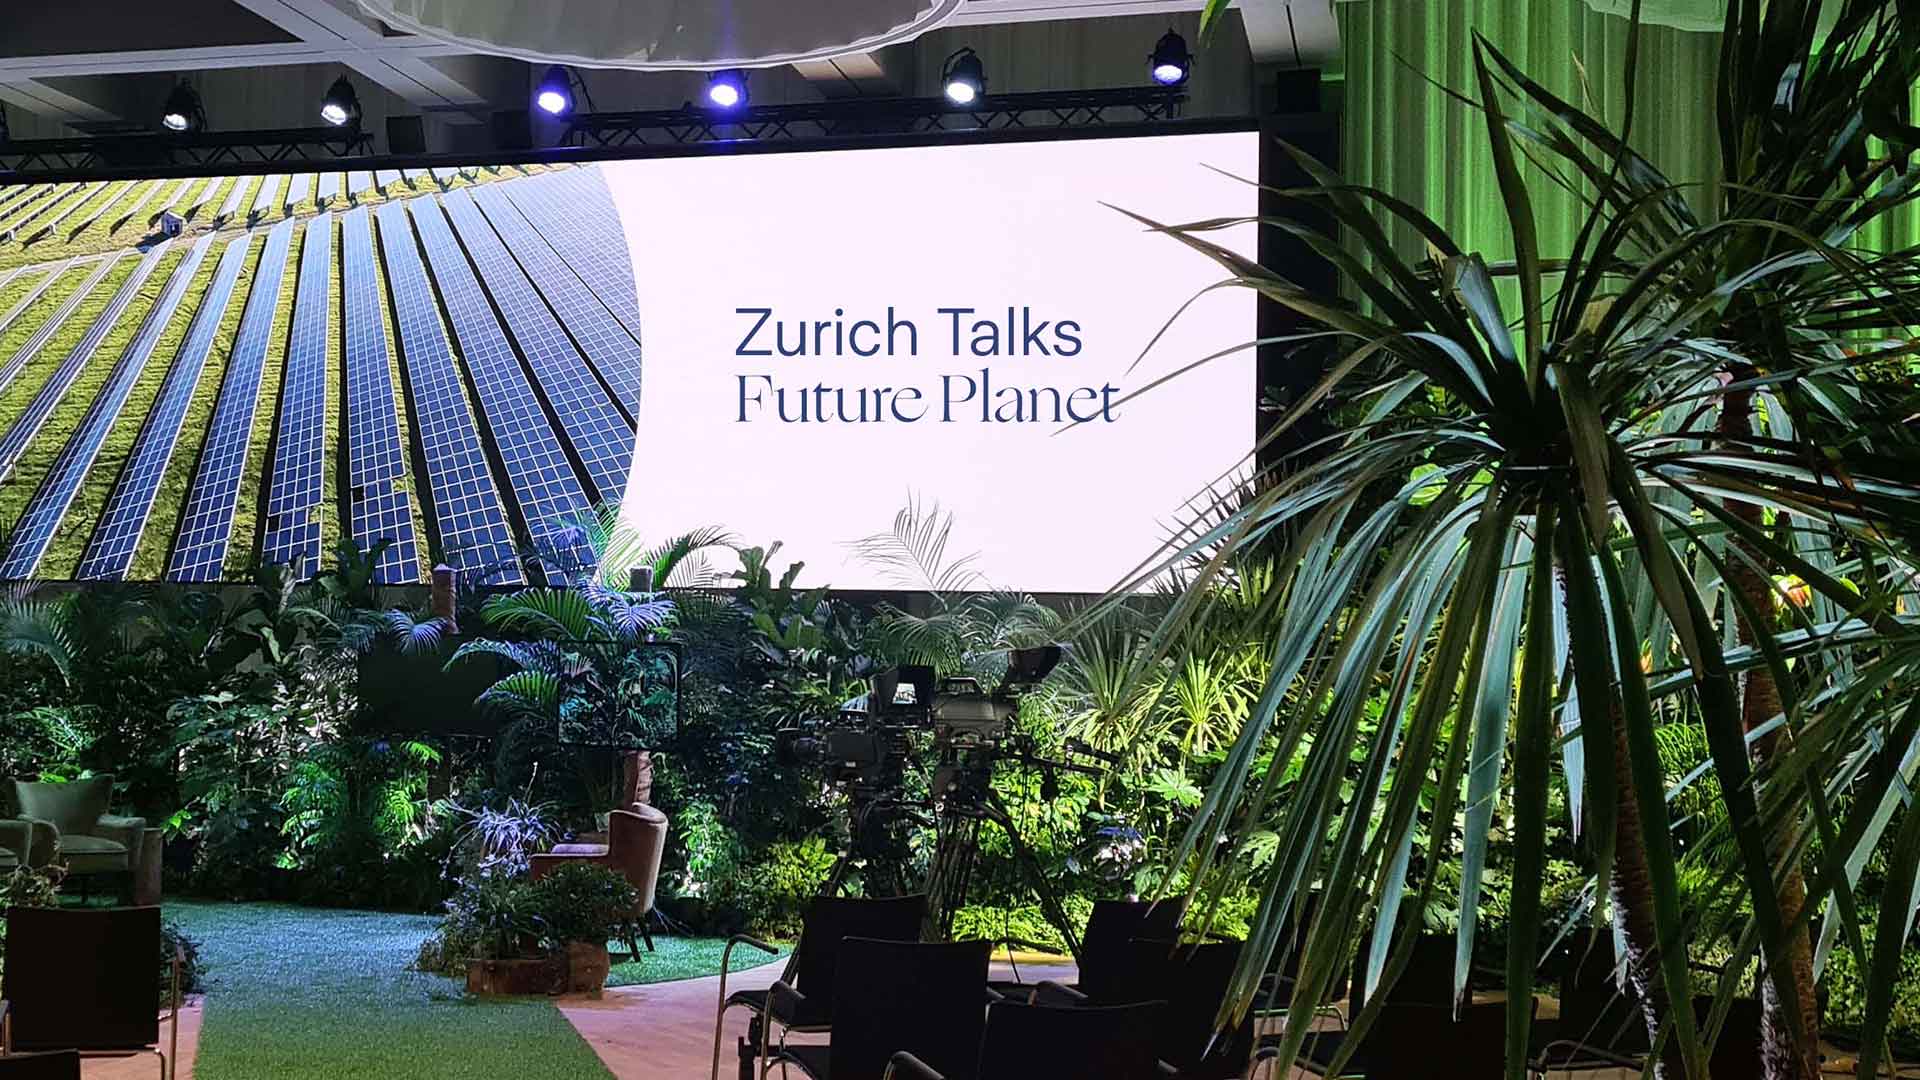 Zurich Talks stage